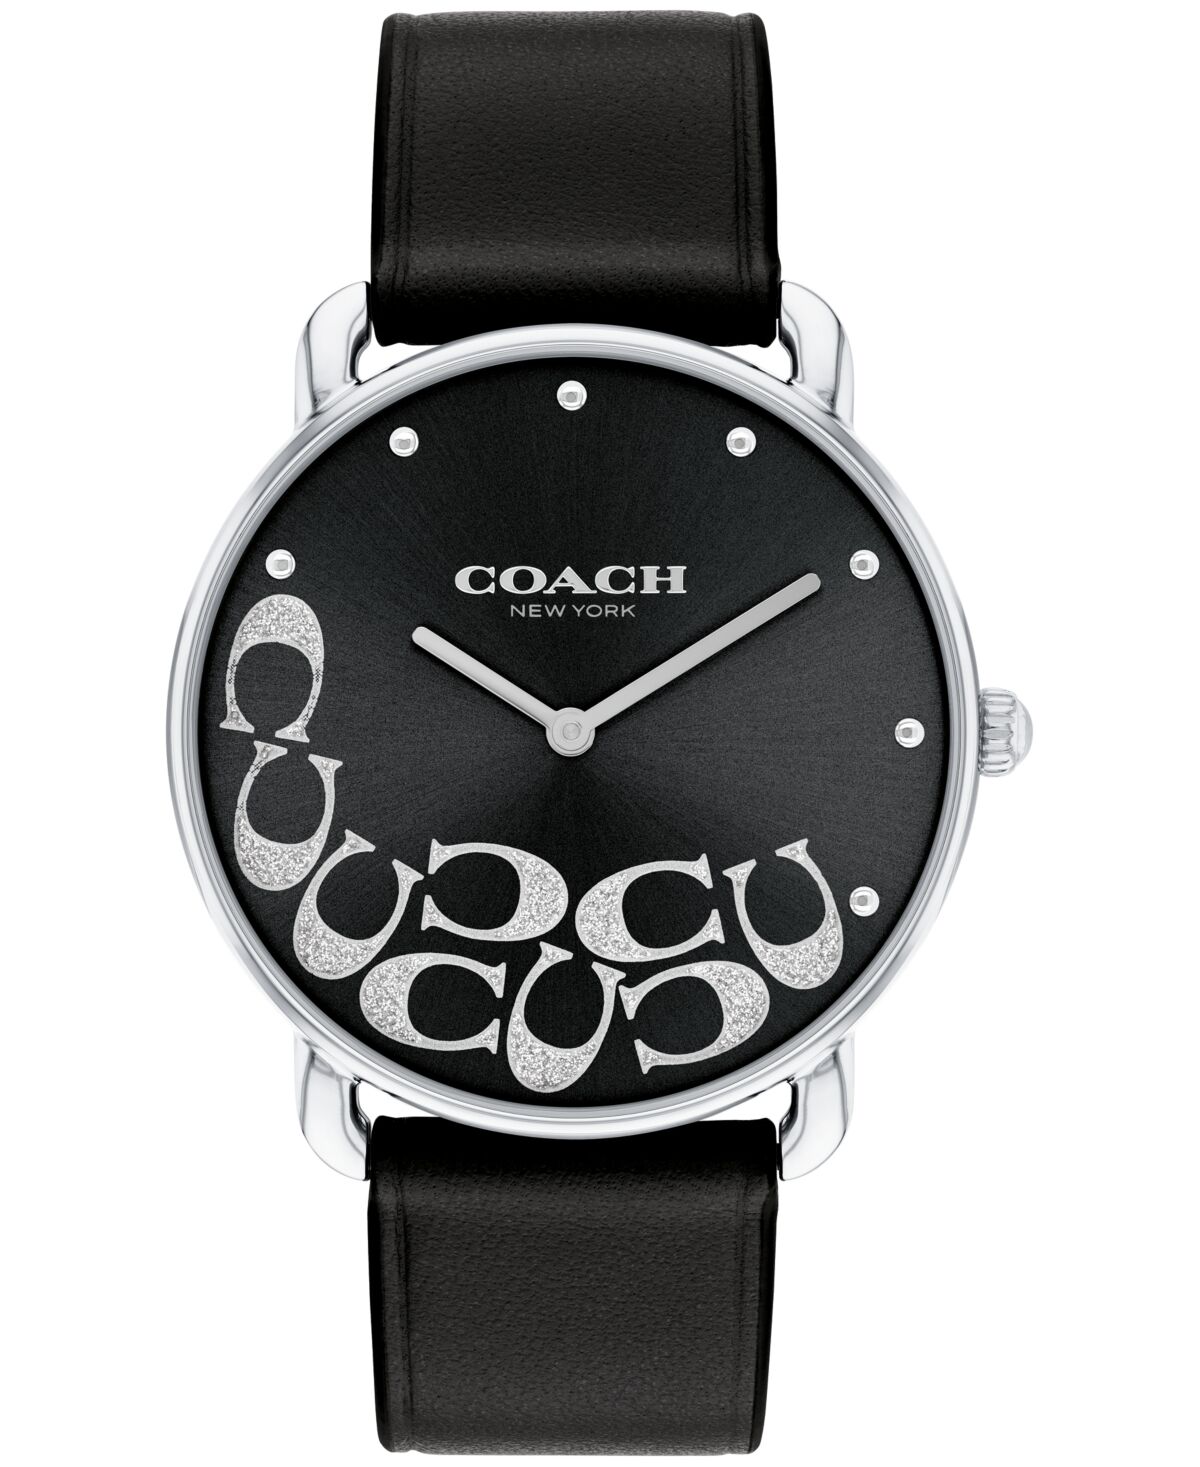 Coach Women's Elliot Black Leather Watch 36mm - Black